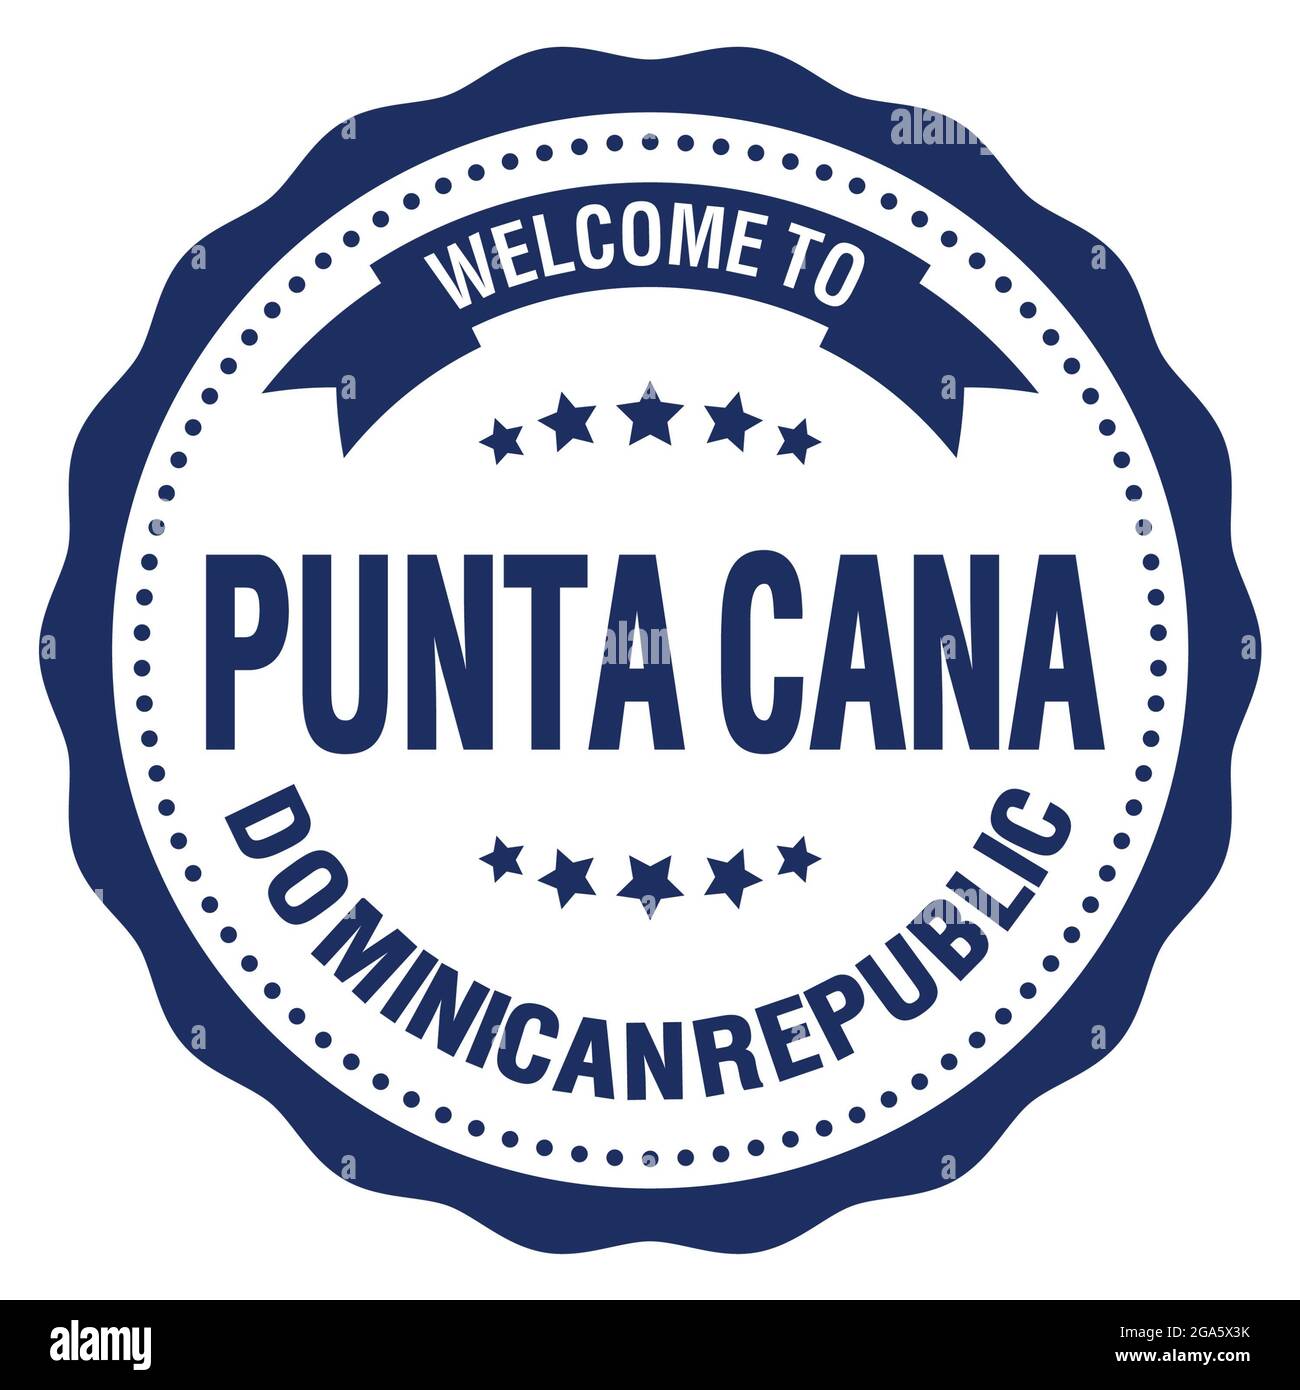 BIENVENUE À PUNTA CANA - RÉPUBLIQUE DOMINICAINE, mots écrits sur le timbre bleu rond de l'insigne Banque D'Images